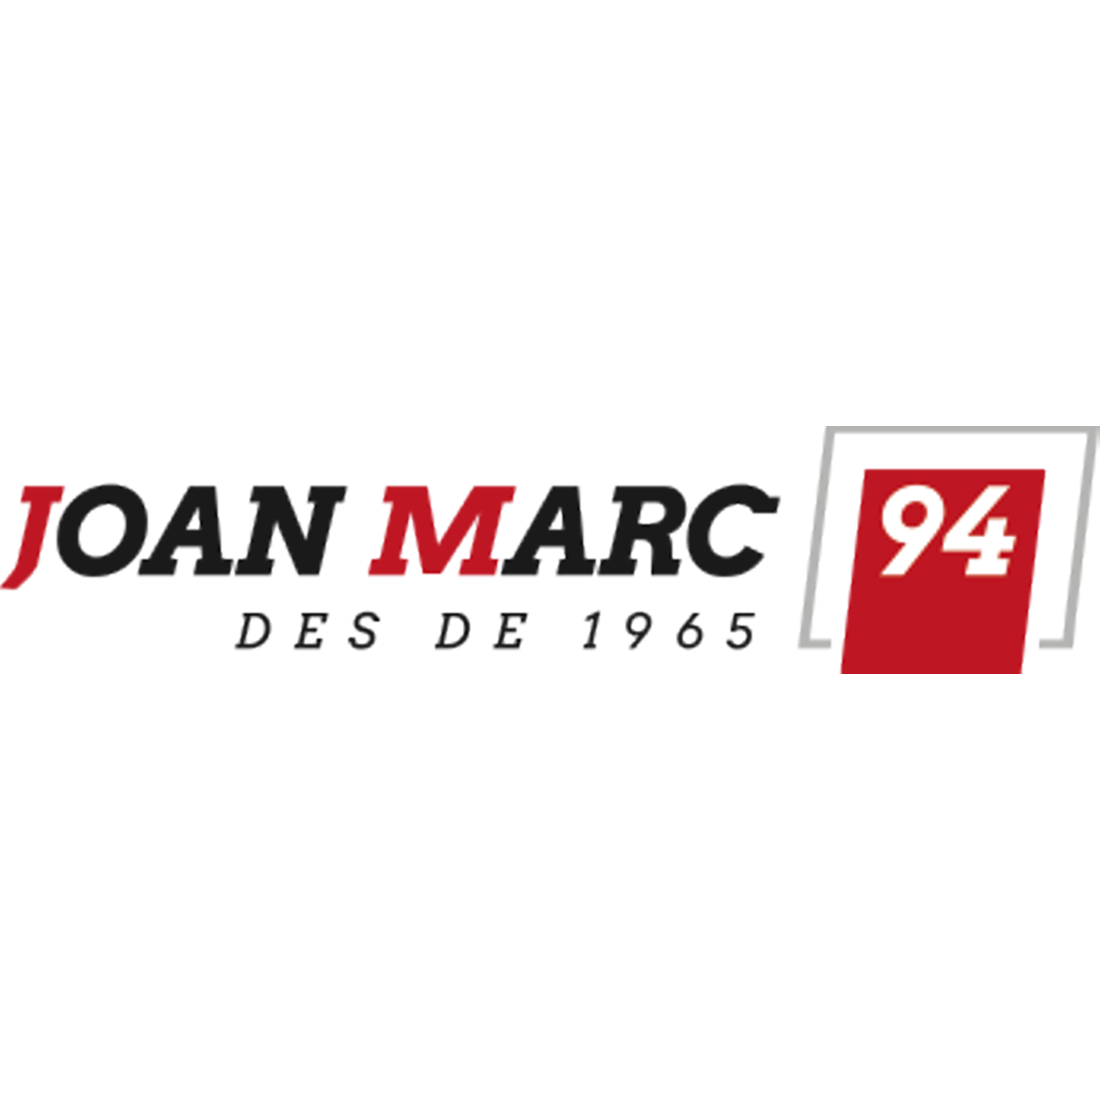 Juan Marc 94 Figueres